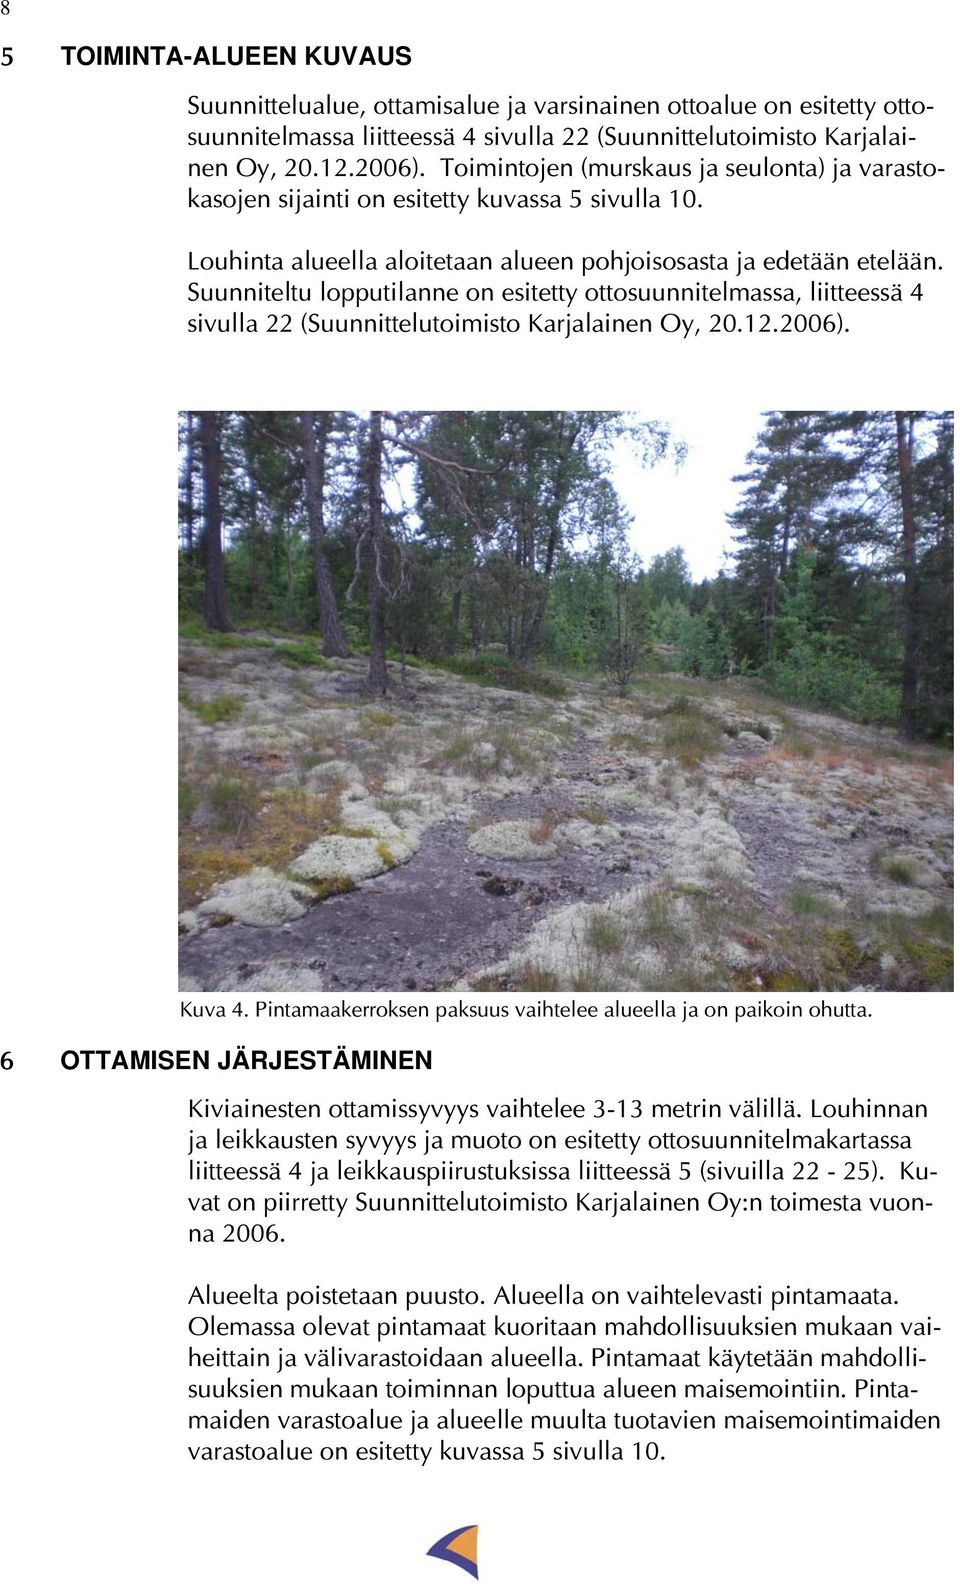 Suunniteltu lopputilanne on esitetty ottosuunnitelmassa, liitteessä 4 sivulla 22 (Suunnittelutoimisto Karjalainen Oy, 20.12.2006). Kuva 4.